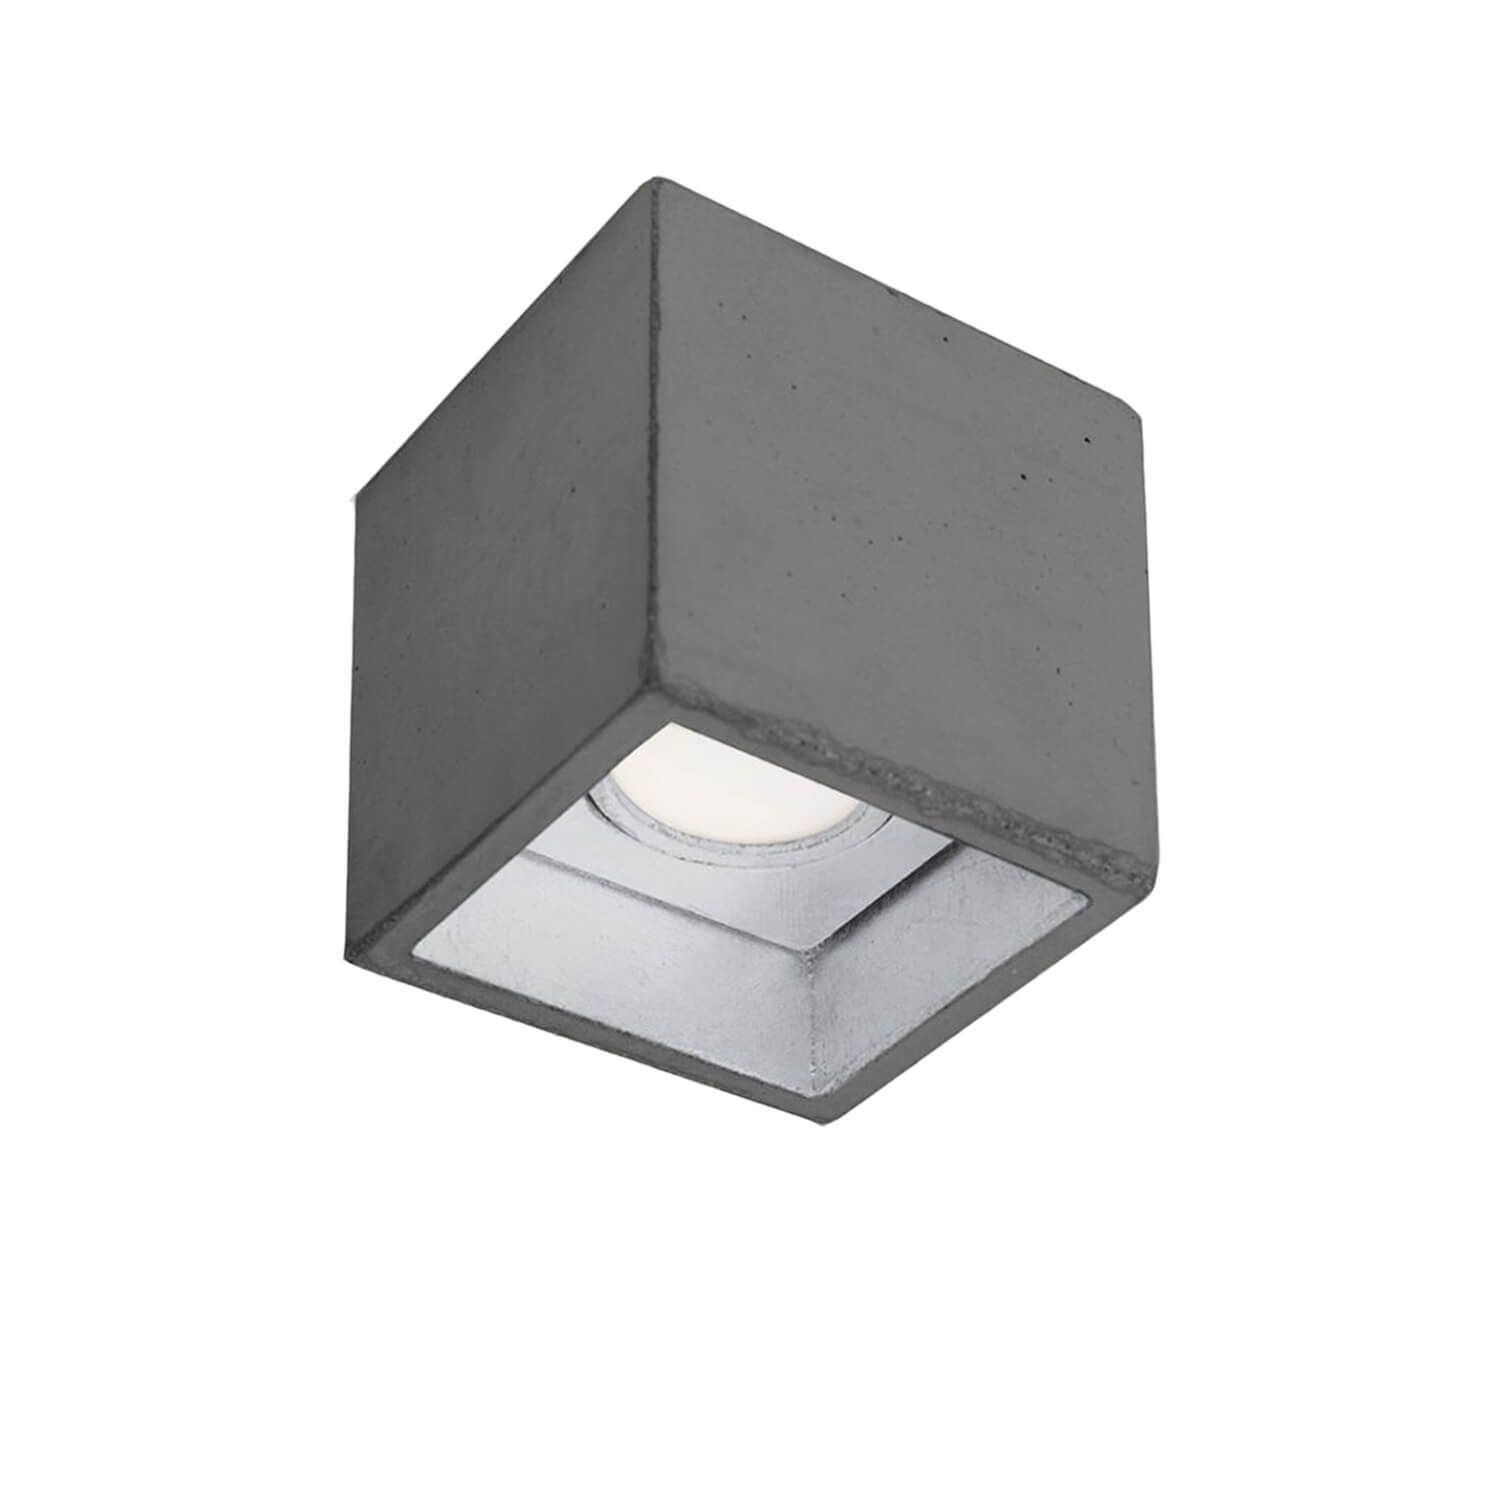 Beton Deckenstrahler Silber LED Modern Design 10cm